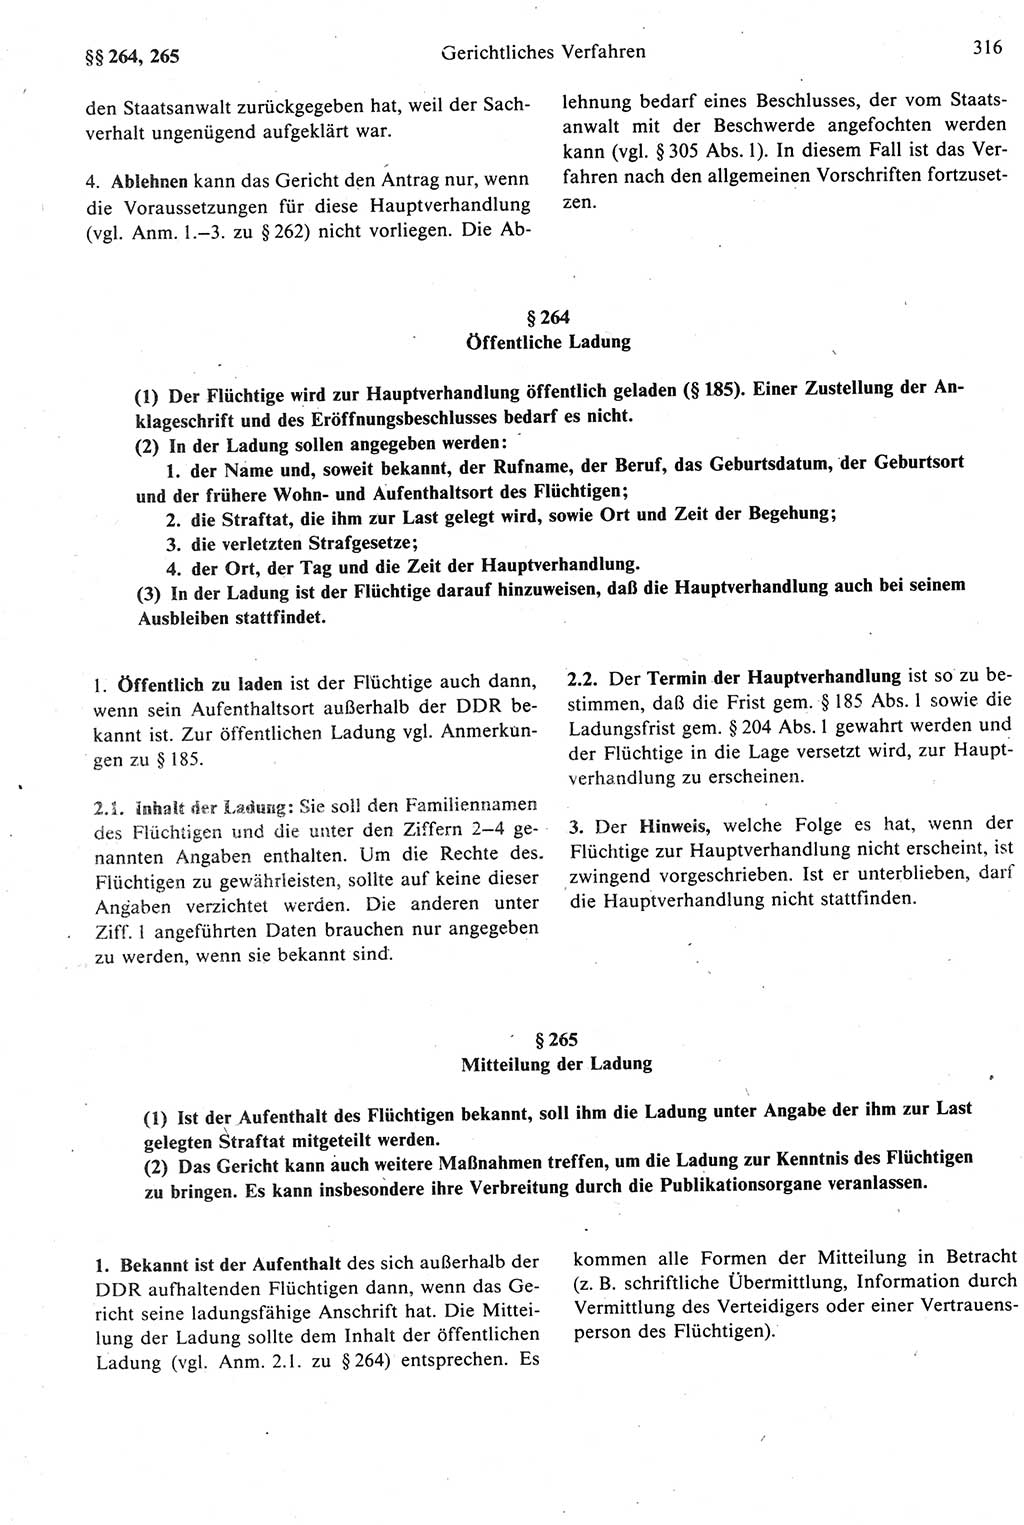 Strafprozeßrecht der DDR [Deutsche Demokratische Republik], Kommentar zur Strafprozeßordnung (StPO) 1987, Seite 316 (Strafprozeßr. DDR Komm. StPO 1987, S. 316)